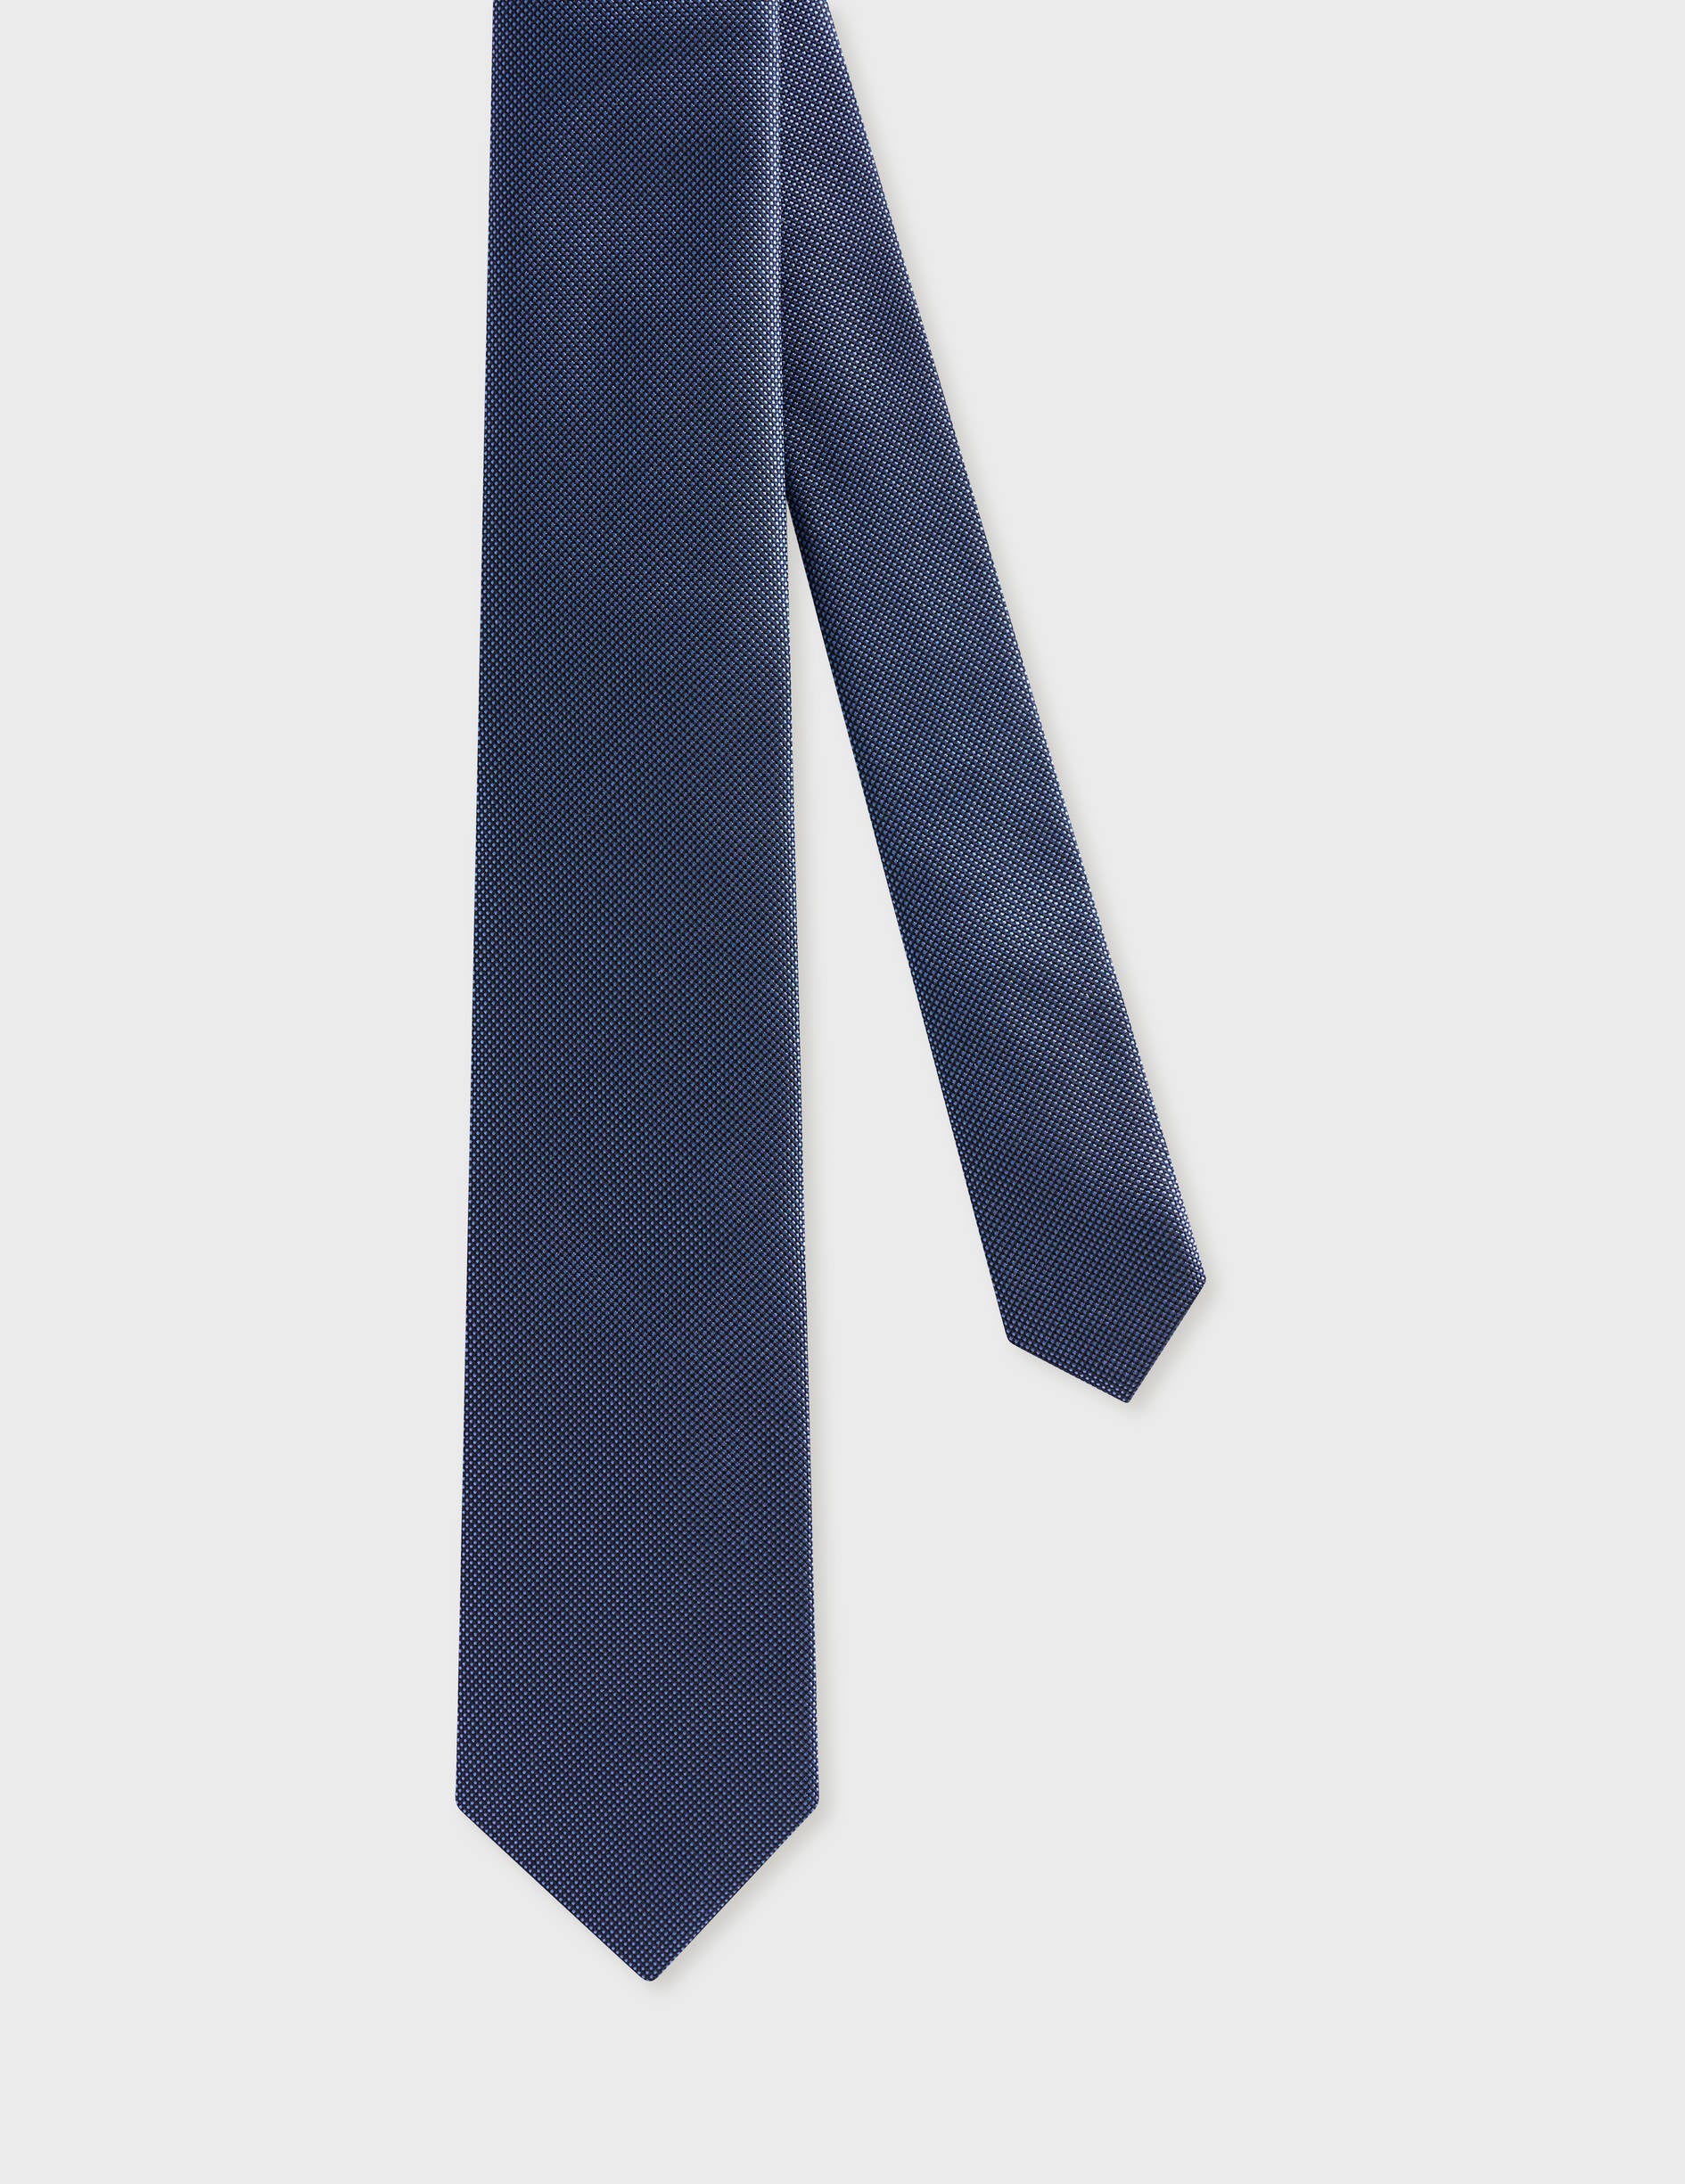 Thin blue silk tie